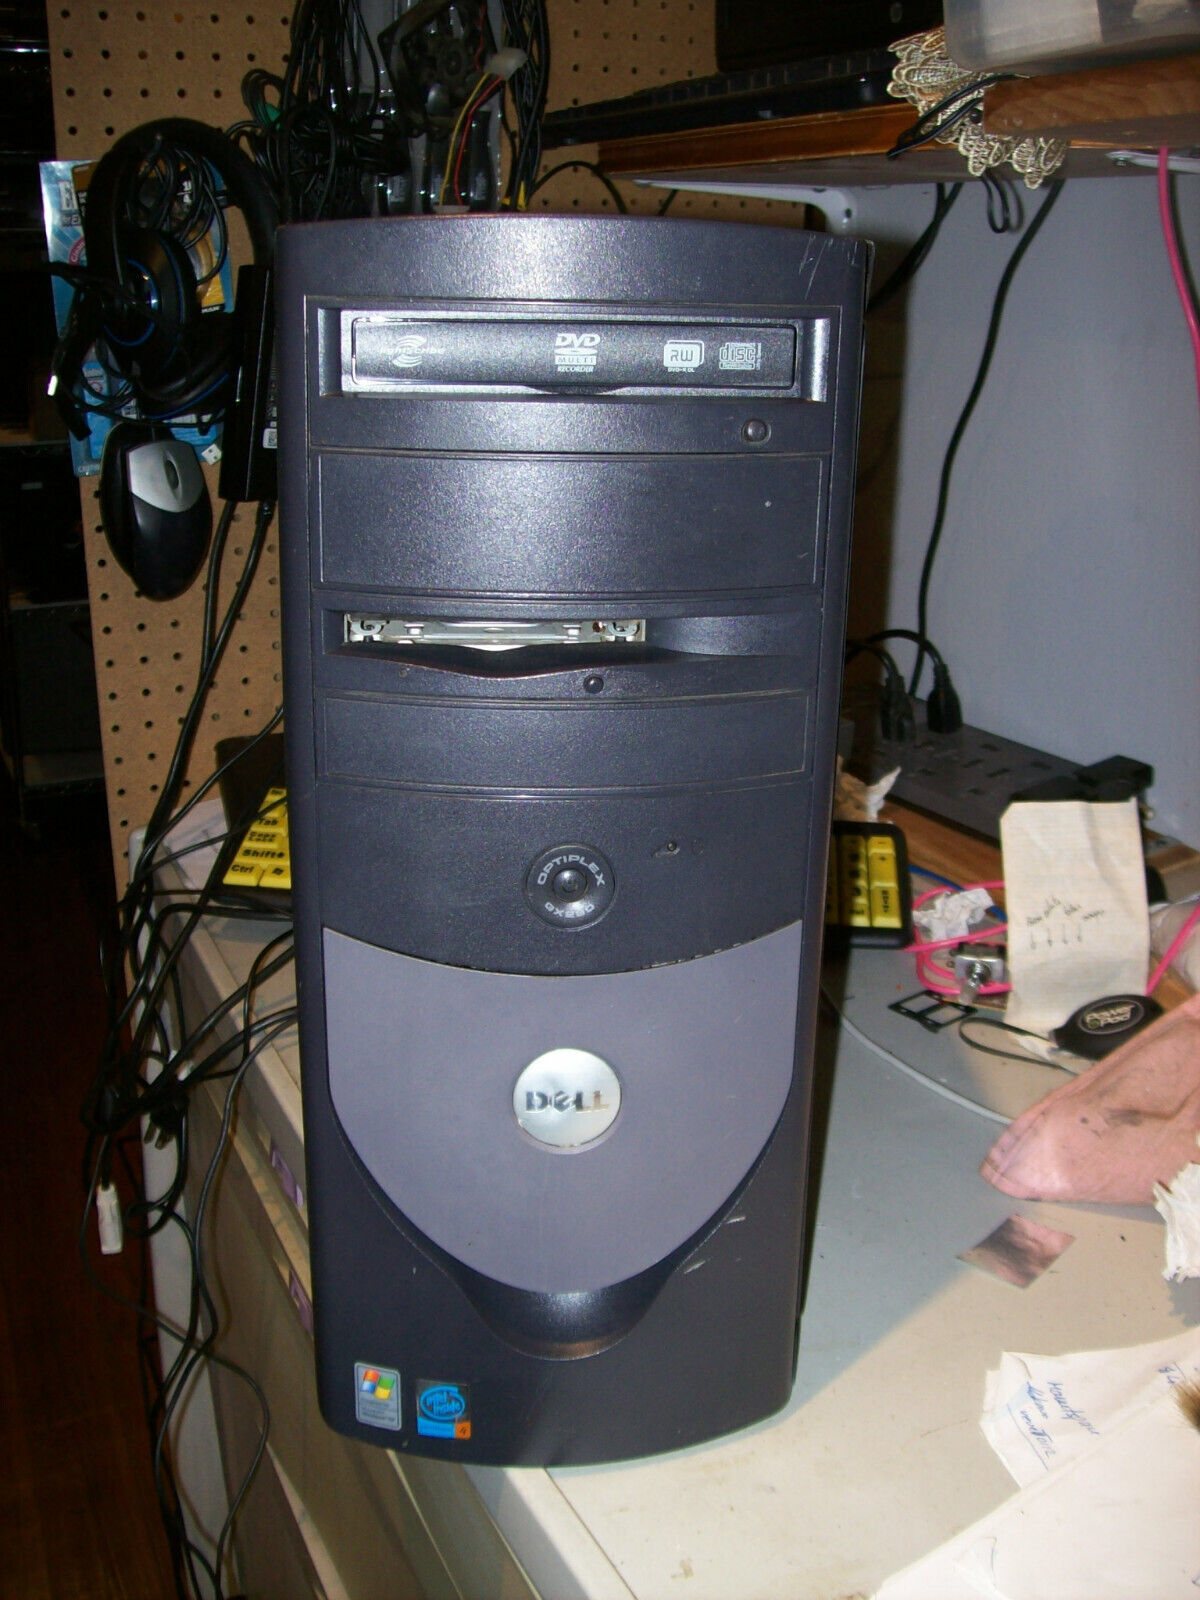 Dell Optiplex GX280 Intel Pentium 4 3.00Gh 512MB RAM 40GB HDD WinXP - SERVICED - $389.90